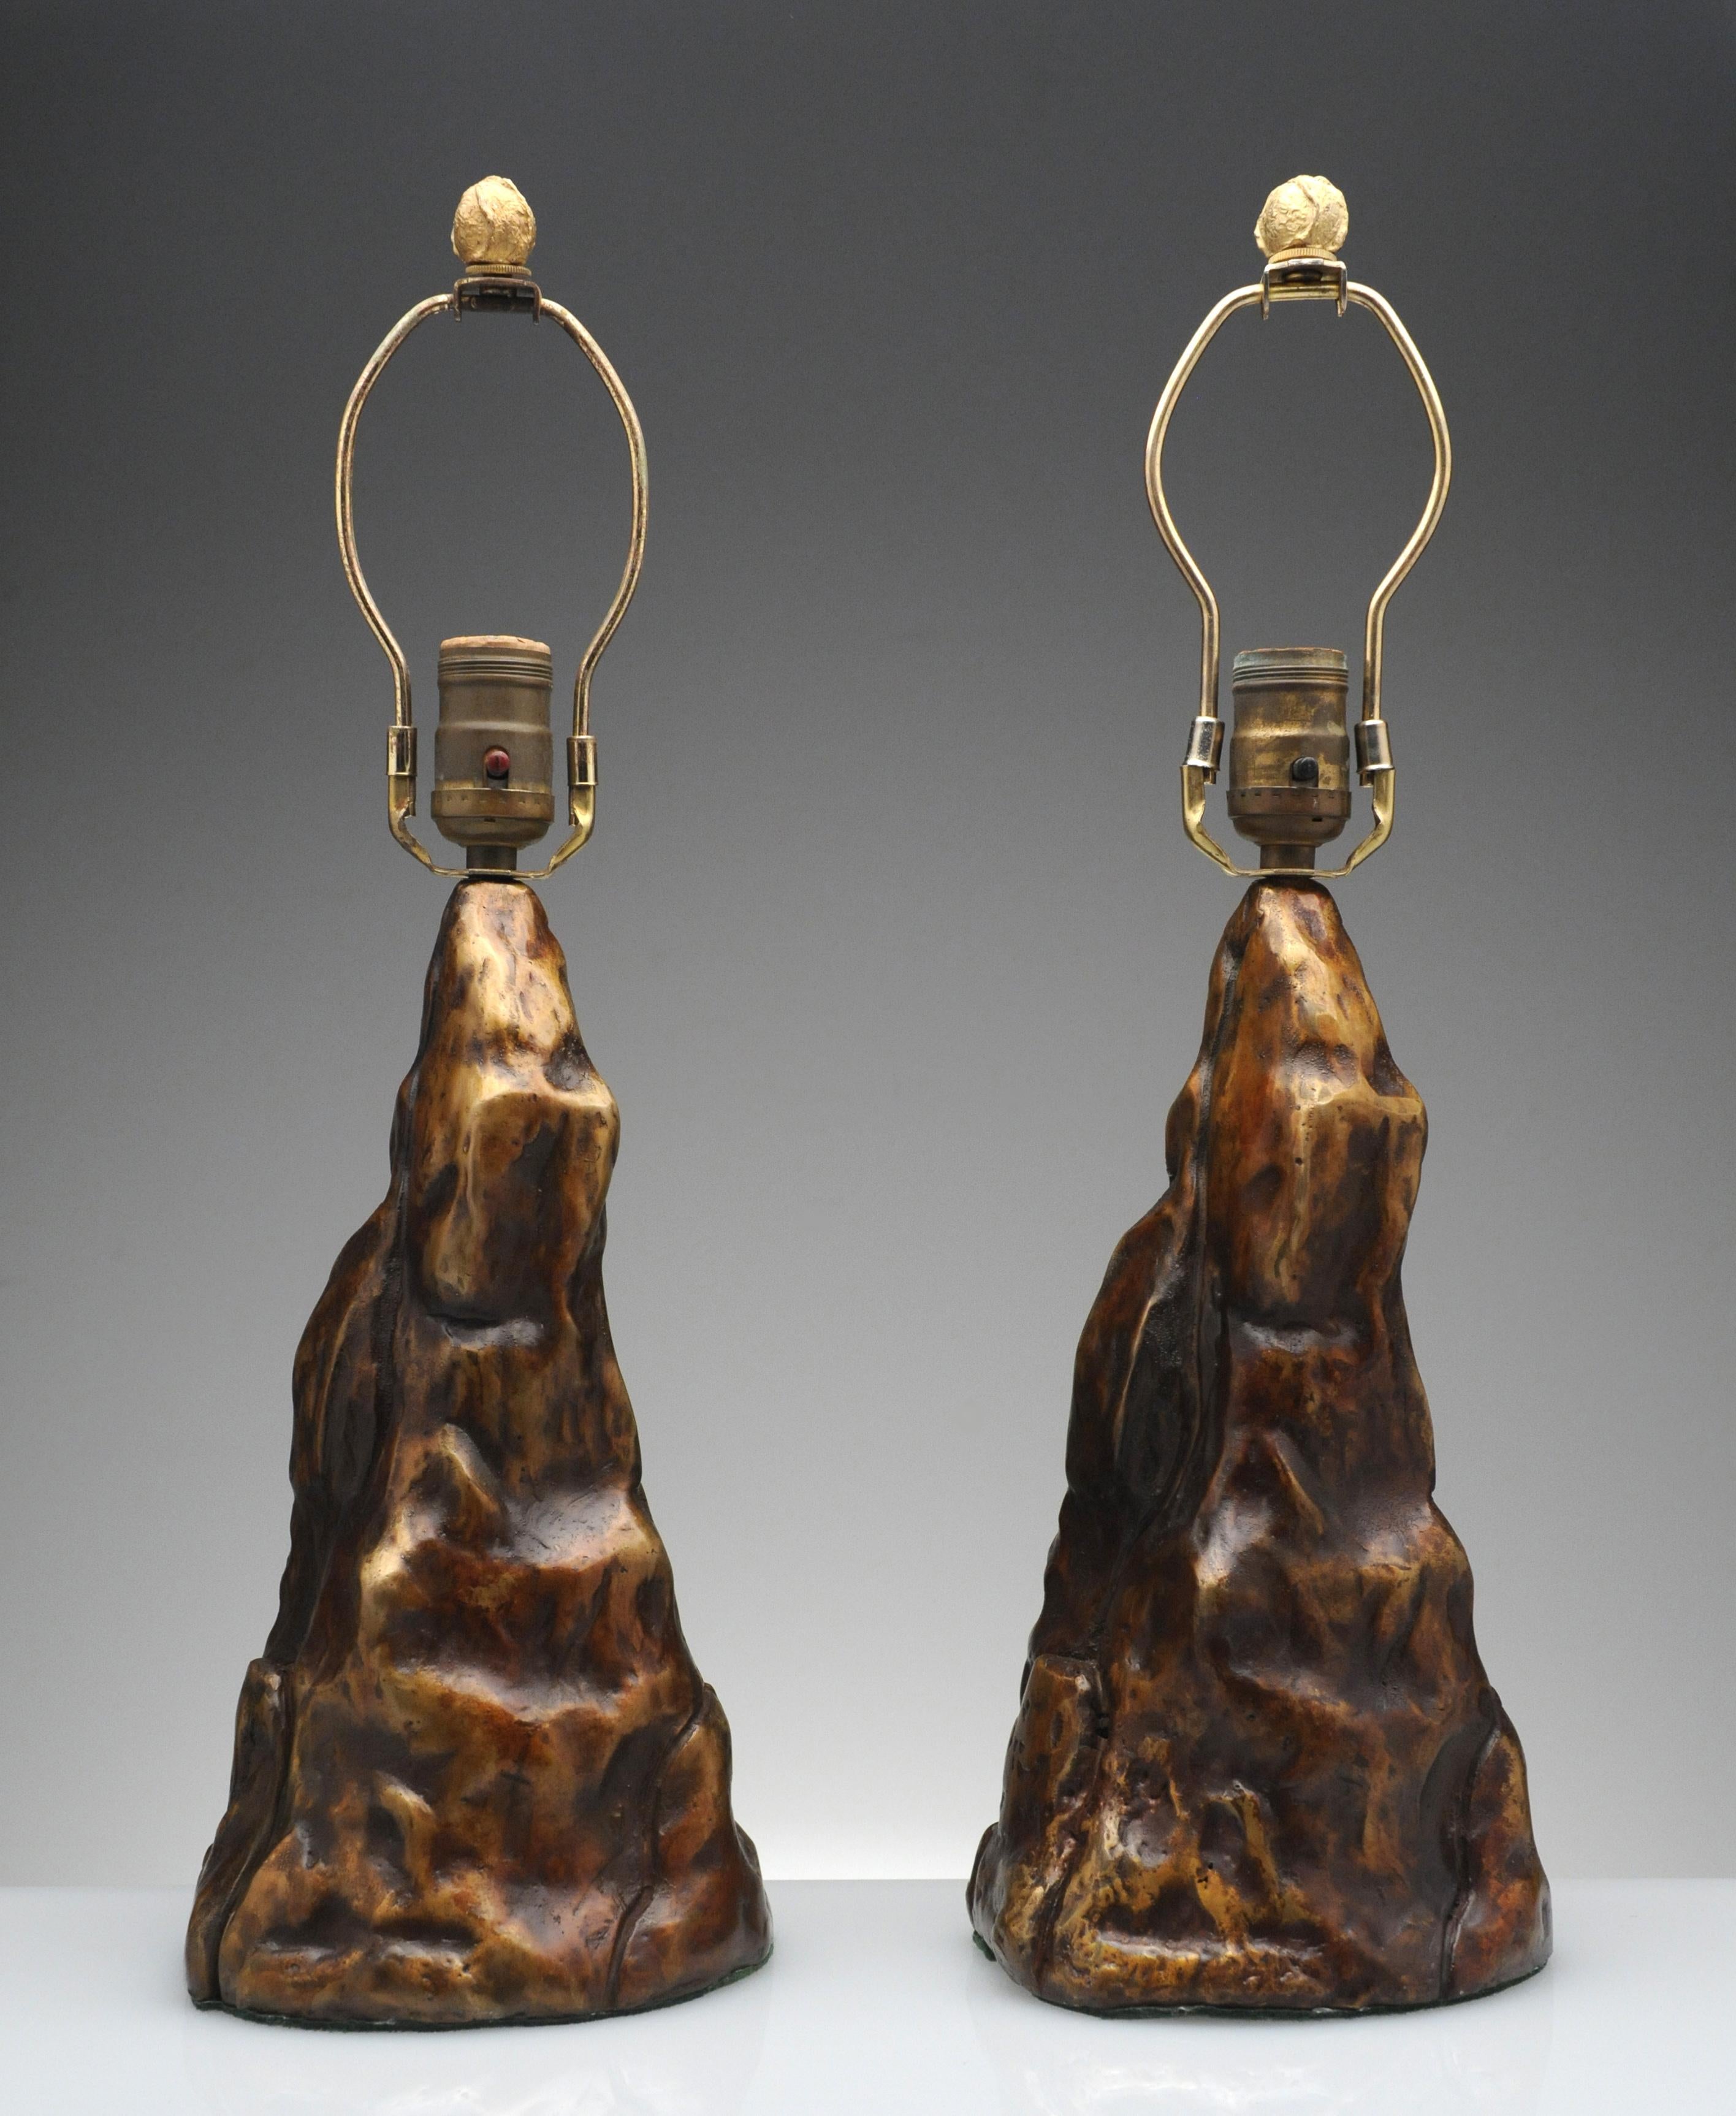 Außergewöhnliches Paar Vintage-Tischlampen aus Bronze. Die Lampen haben noch den originalen Bronzeknauf und weisen eine schöne warme braune Patina auf.  Diese einzigartigen Lampen sind von hoher Qualität und schwer für ihre Größe. 